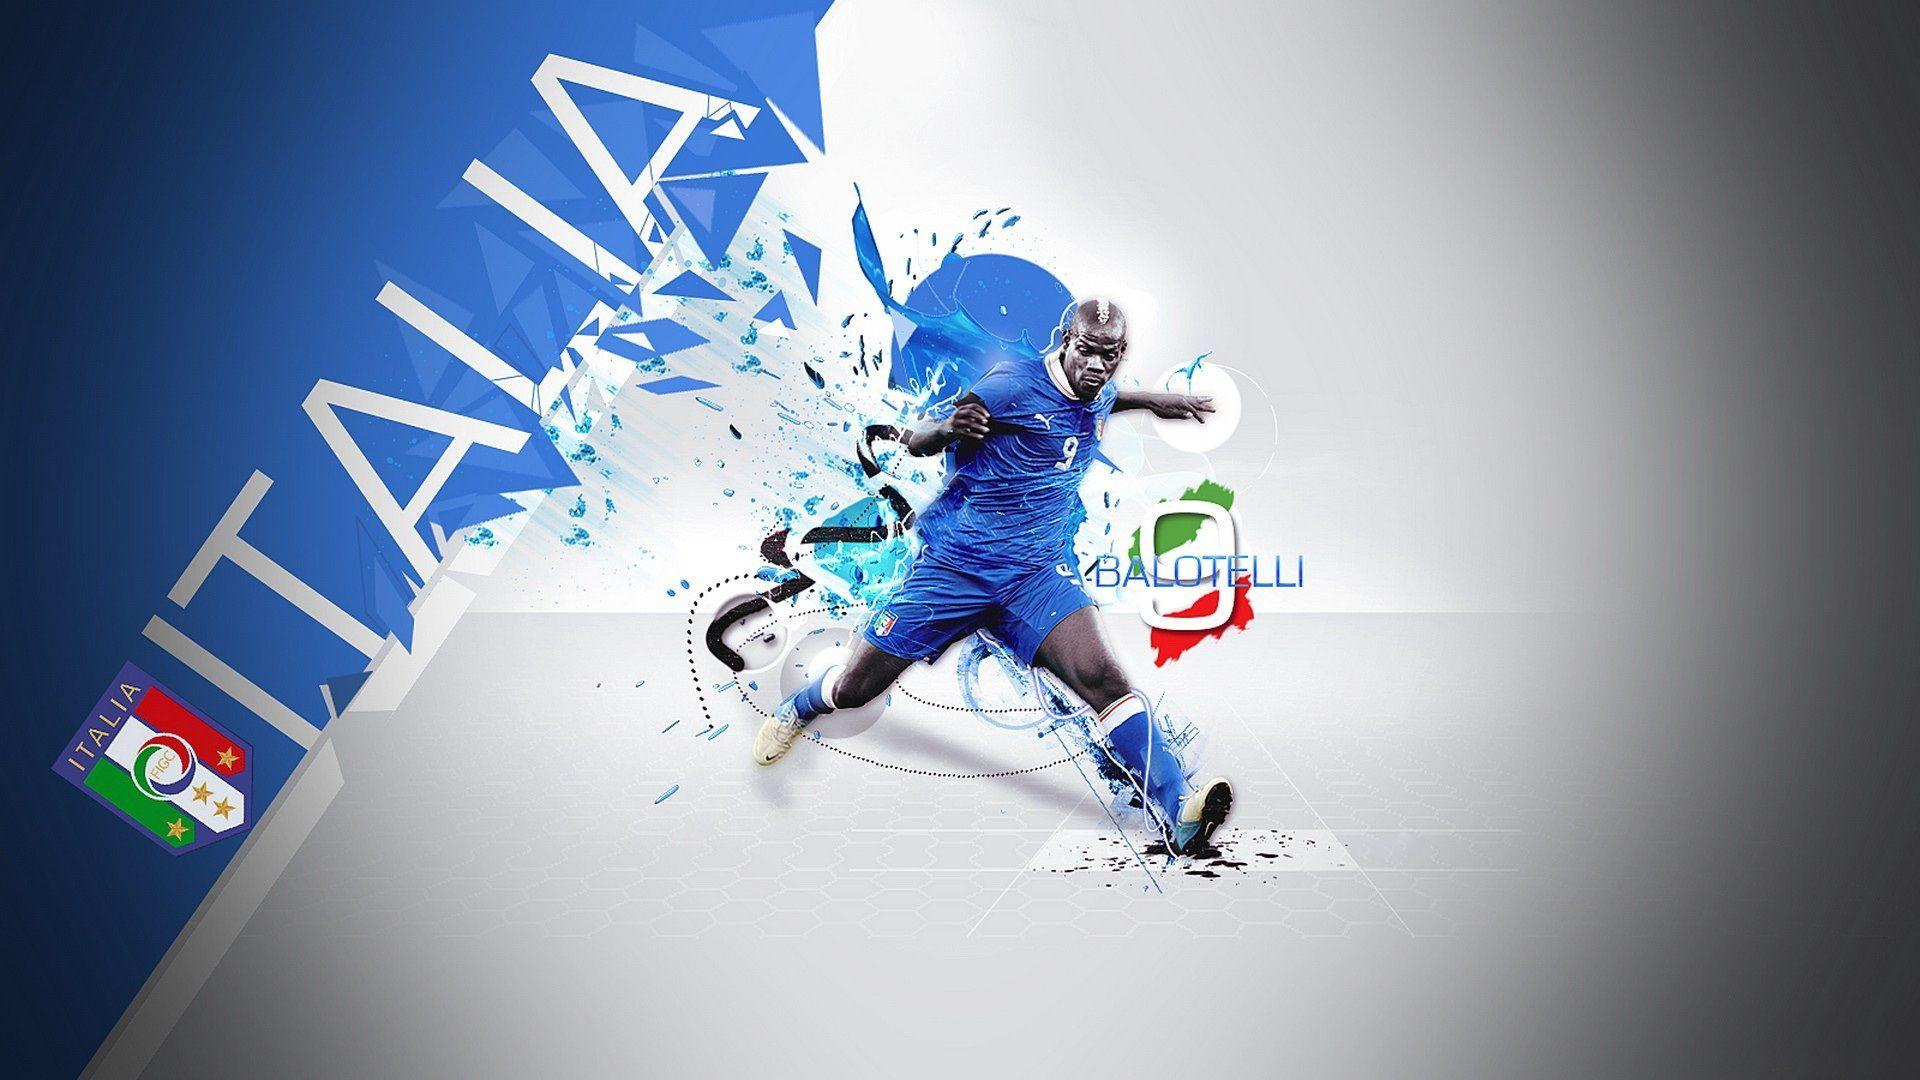 Mario Balotelli Italy Wallpaper. Photography. Football